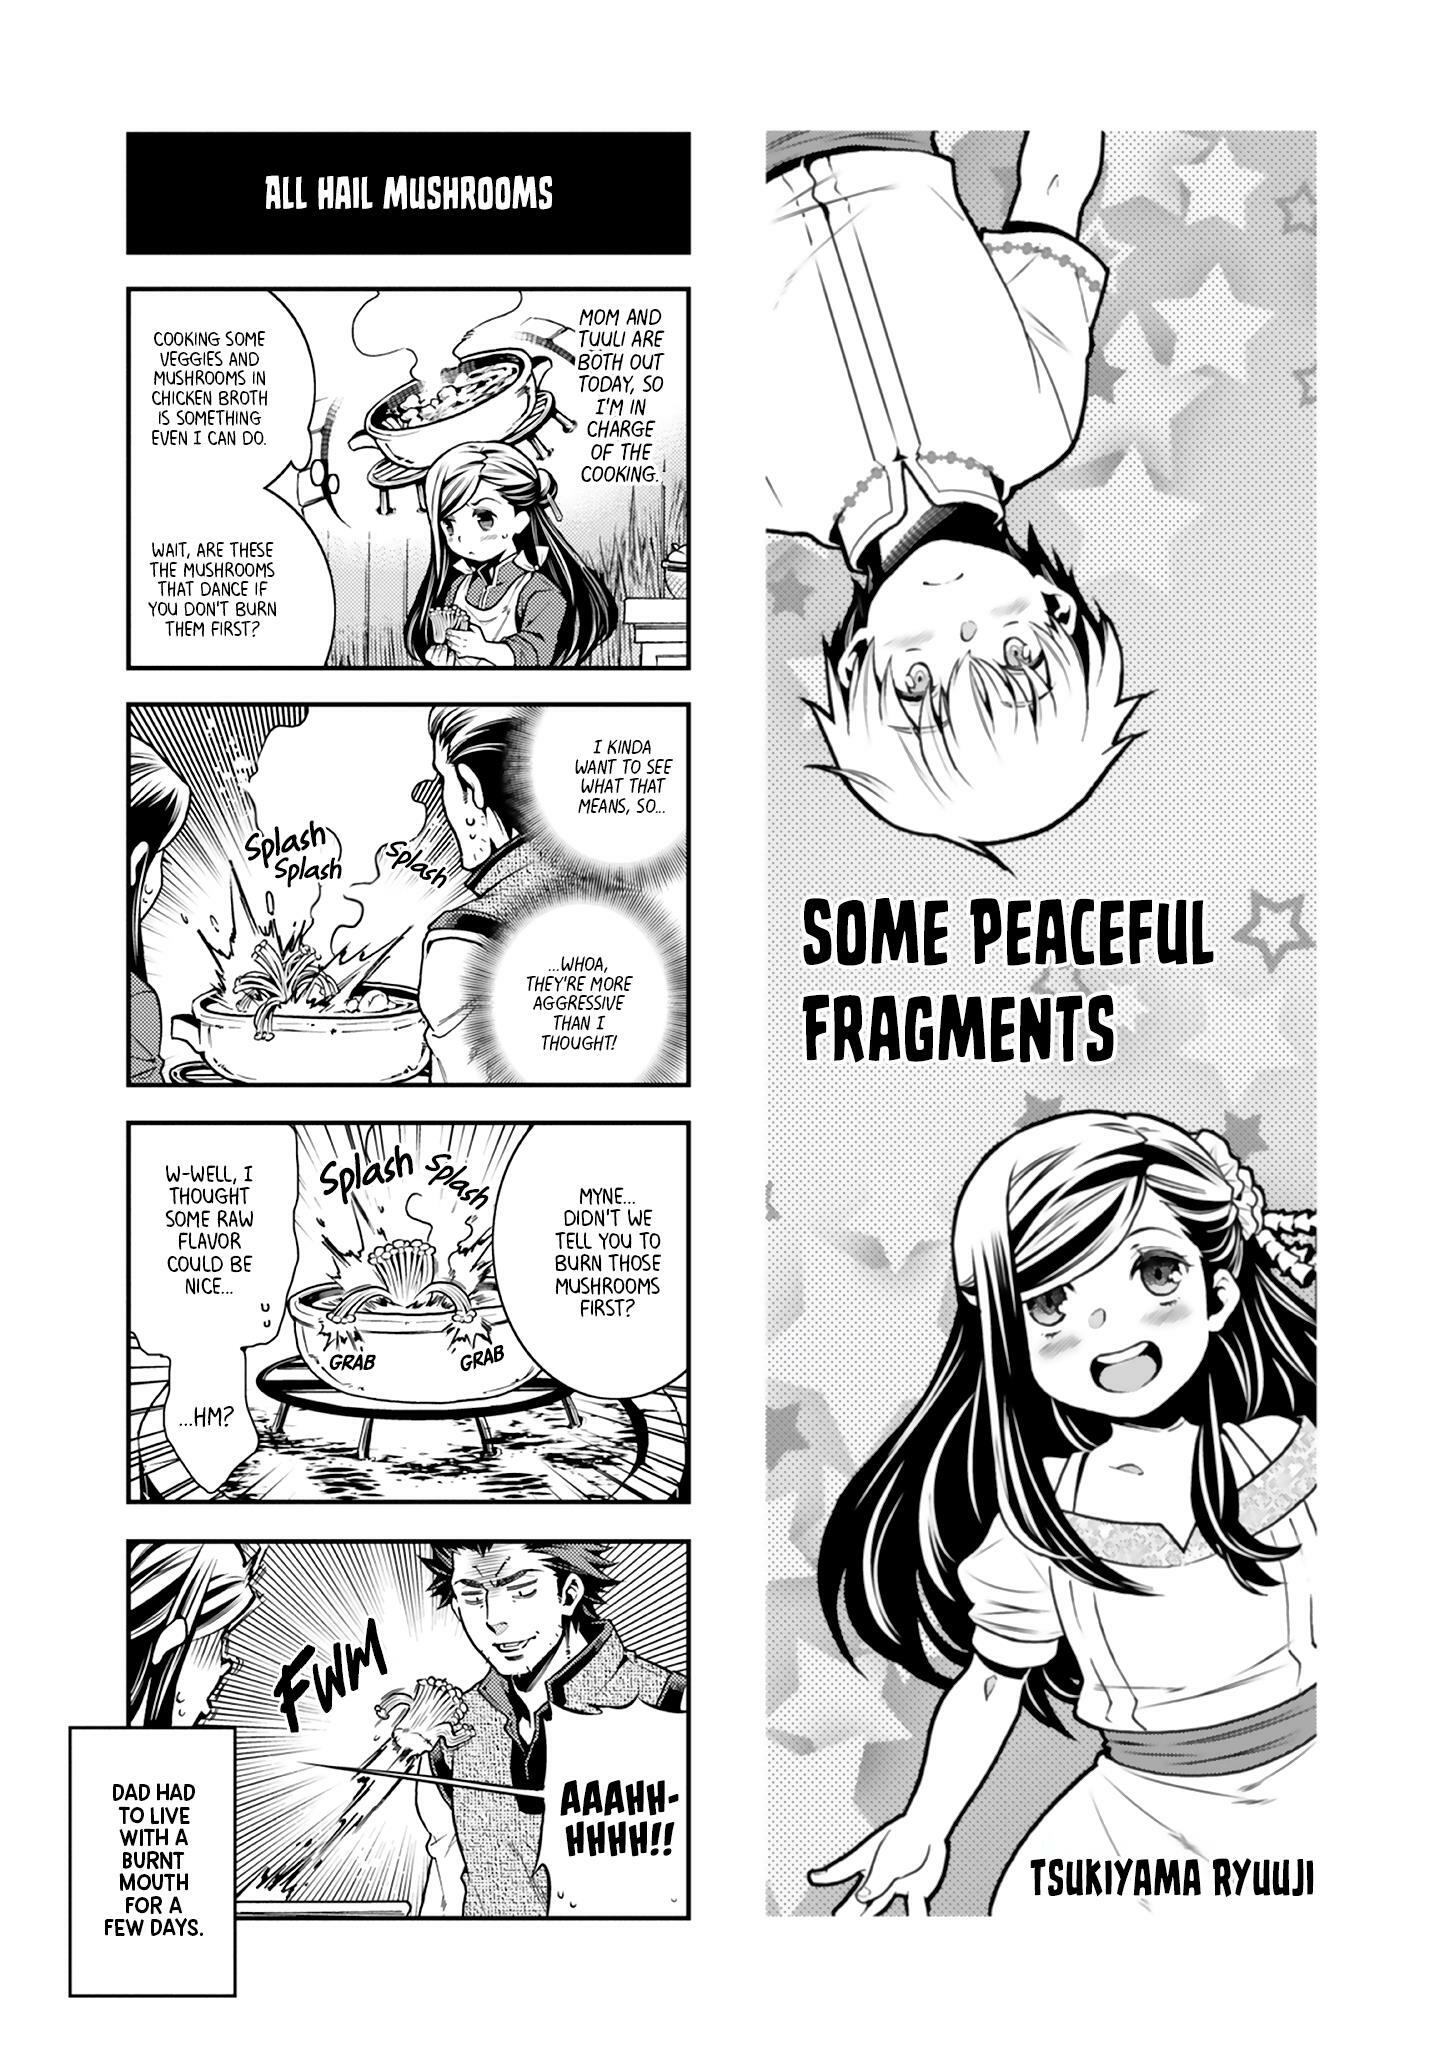 Ascendance of a Bookworm: Koushiki Comic Anthology Manga